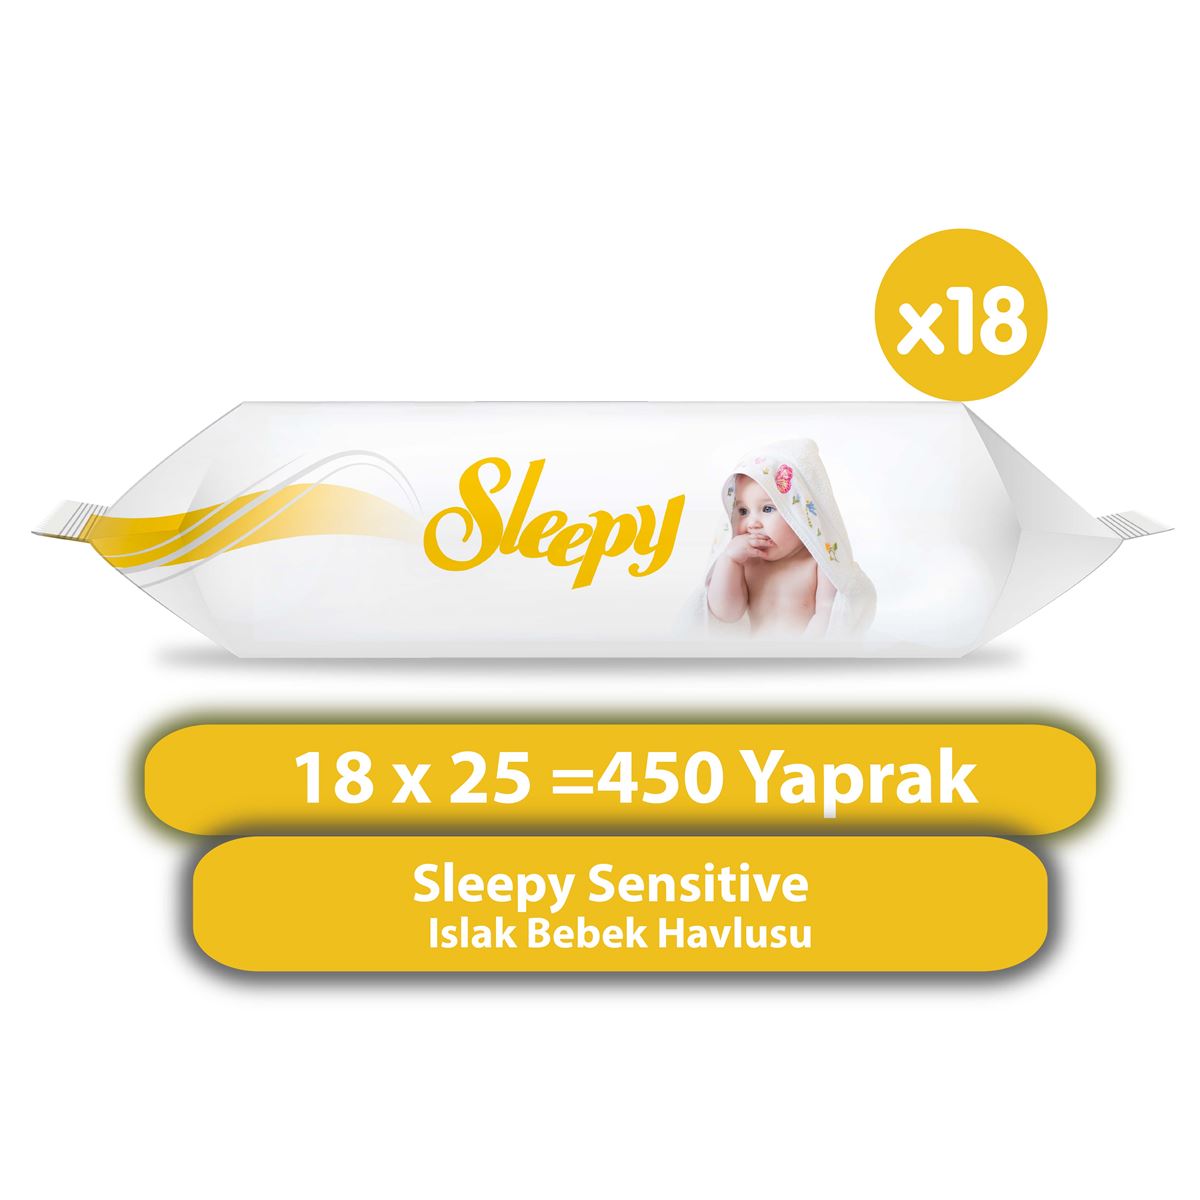 Sleepy Sensitive Islak Bebek Havlusu 18x25 (450 Yaprak)